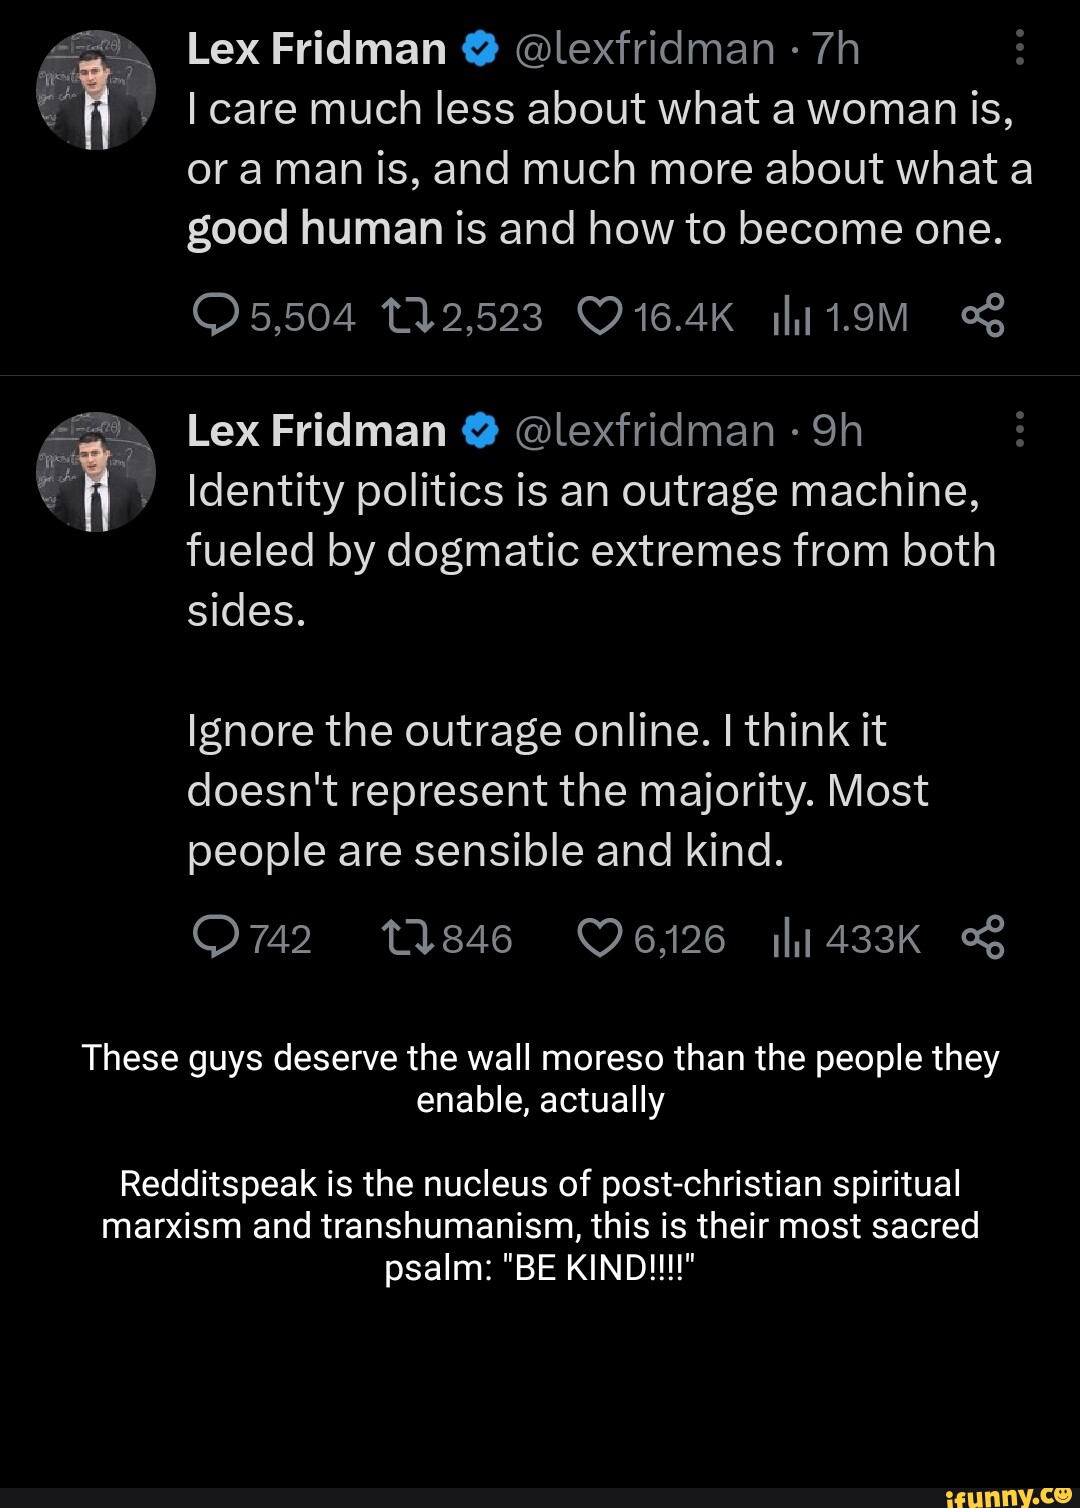 Lex Fridman Net Worth, Age, Wife, Twitter